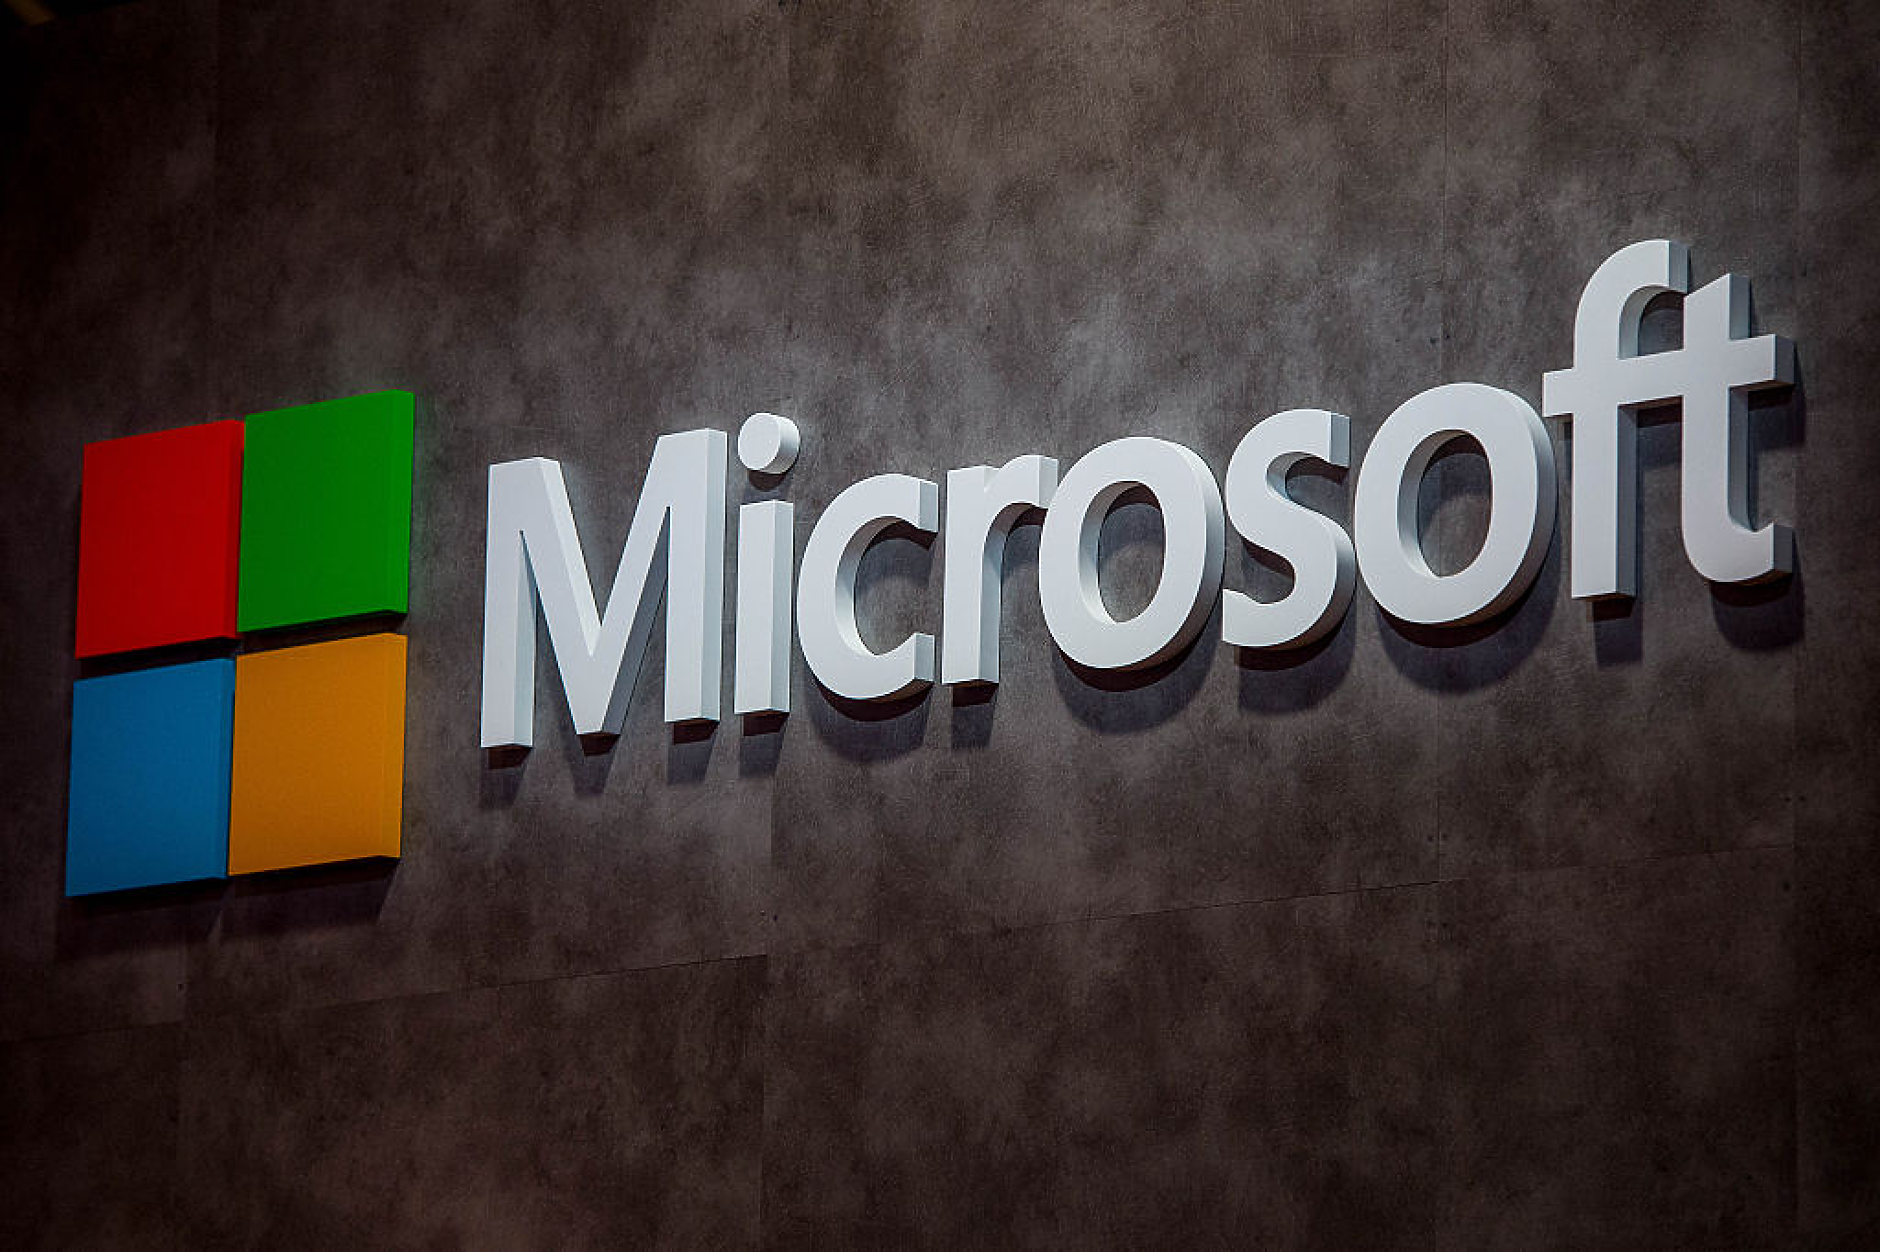 Microsoft е изправена пред антитръстово разследване в ЕС